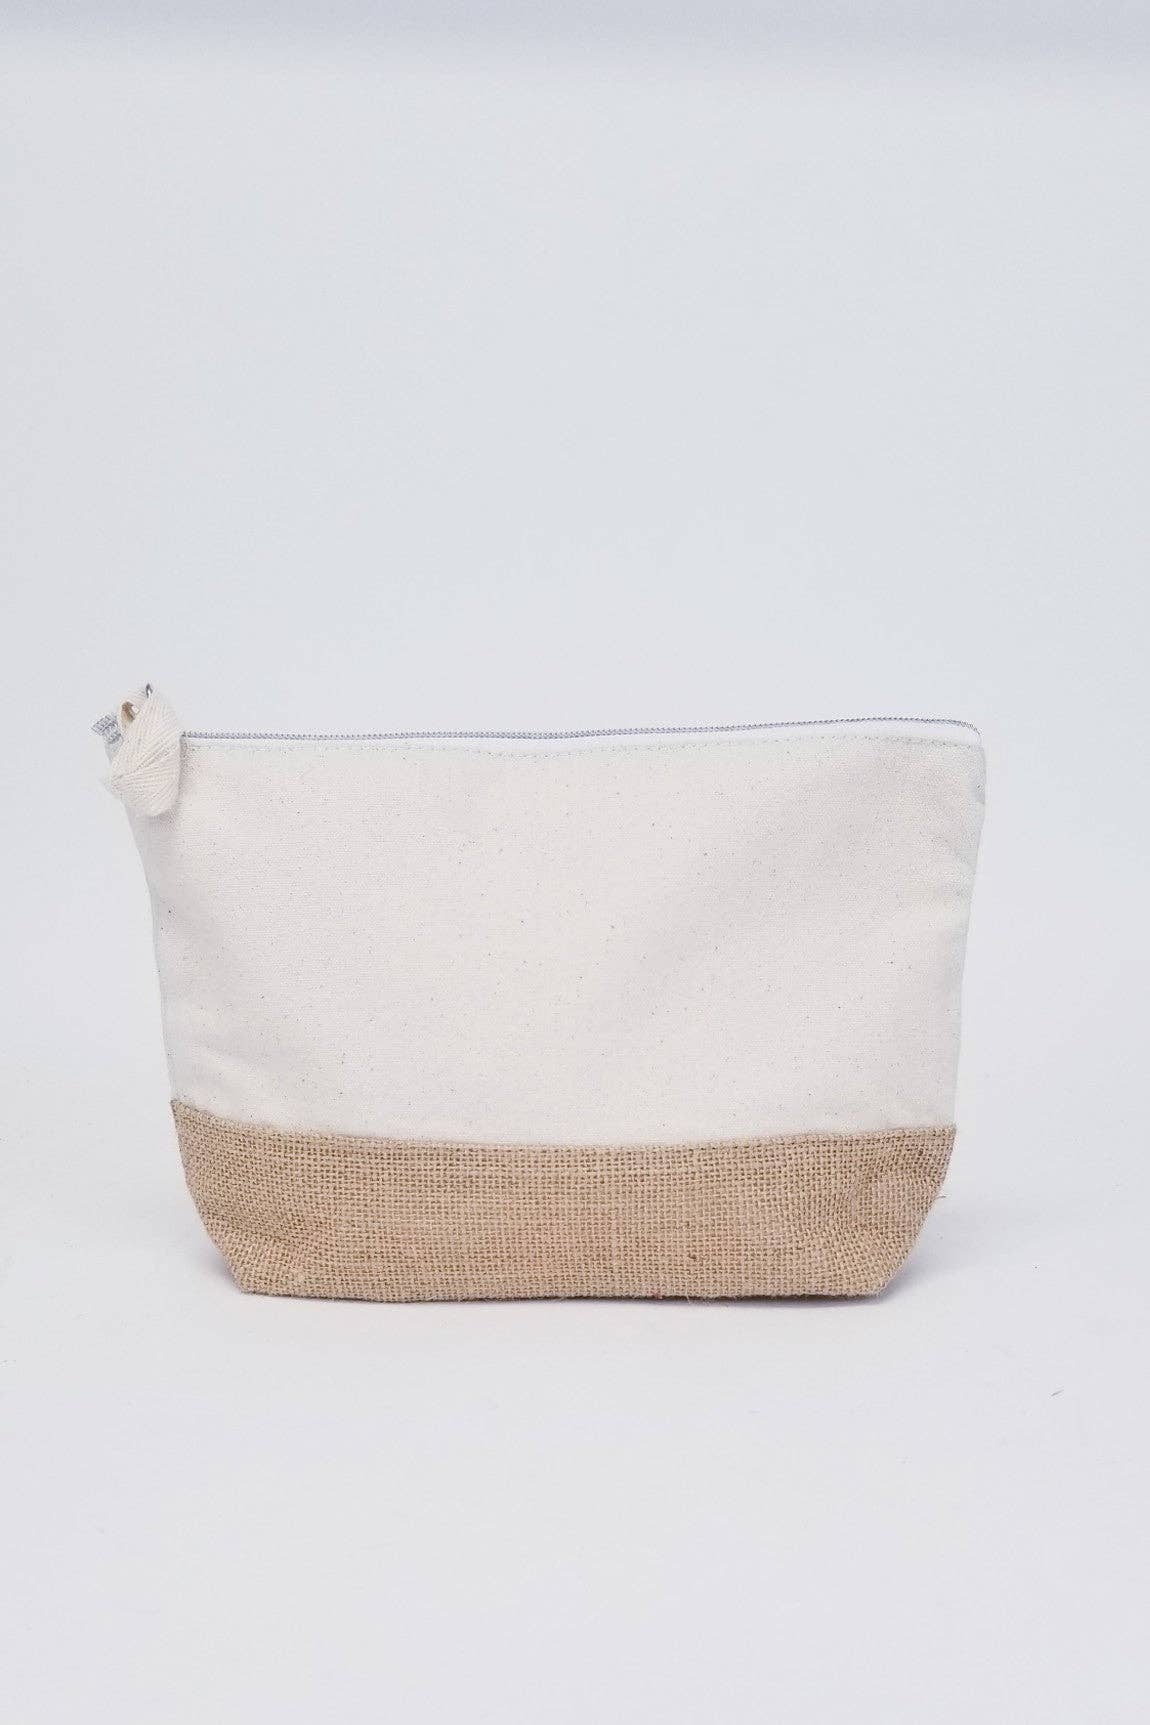 Cotton Canvas Flat Zipper Pouch Large, Wholesale Zipper Bags | Packaging  Decor